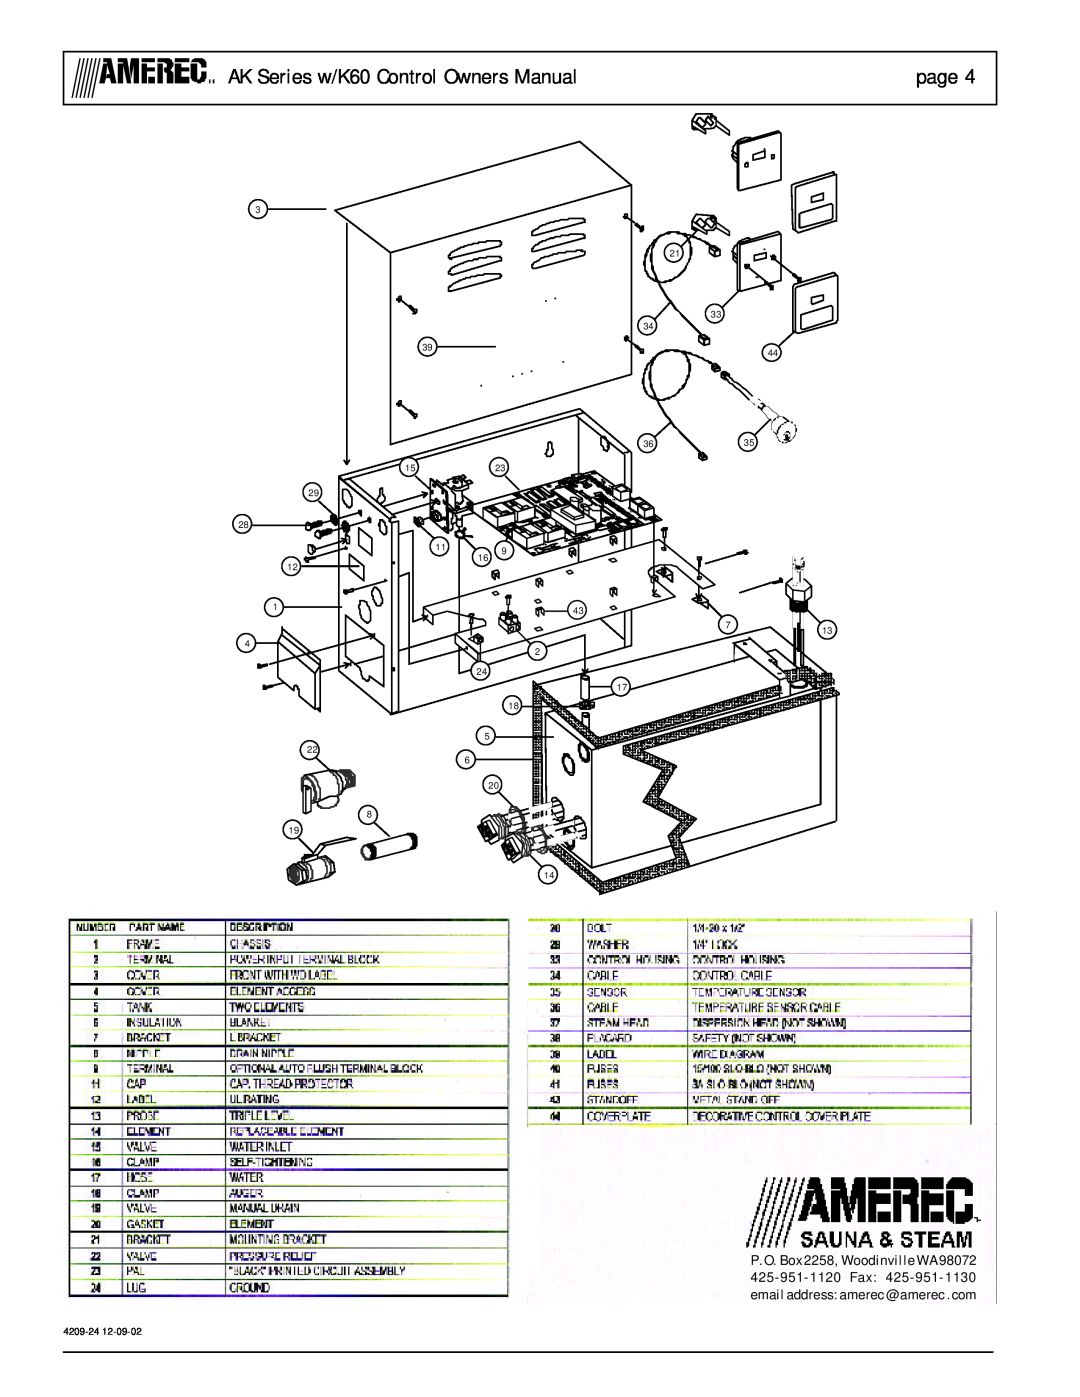 Amerec AK7, AK5, AK10, W/K60 owner manual page, 3635 